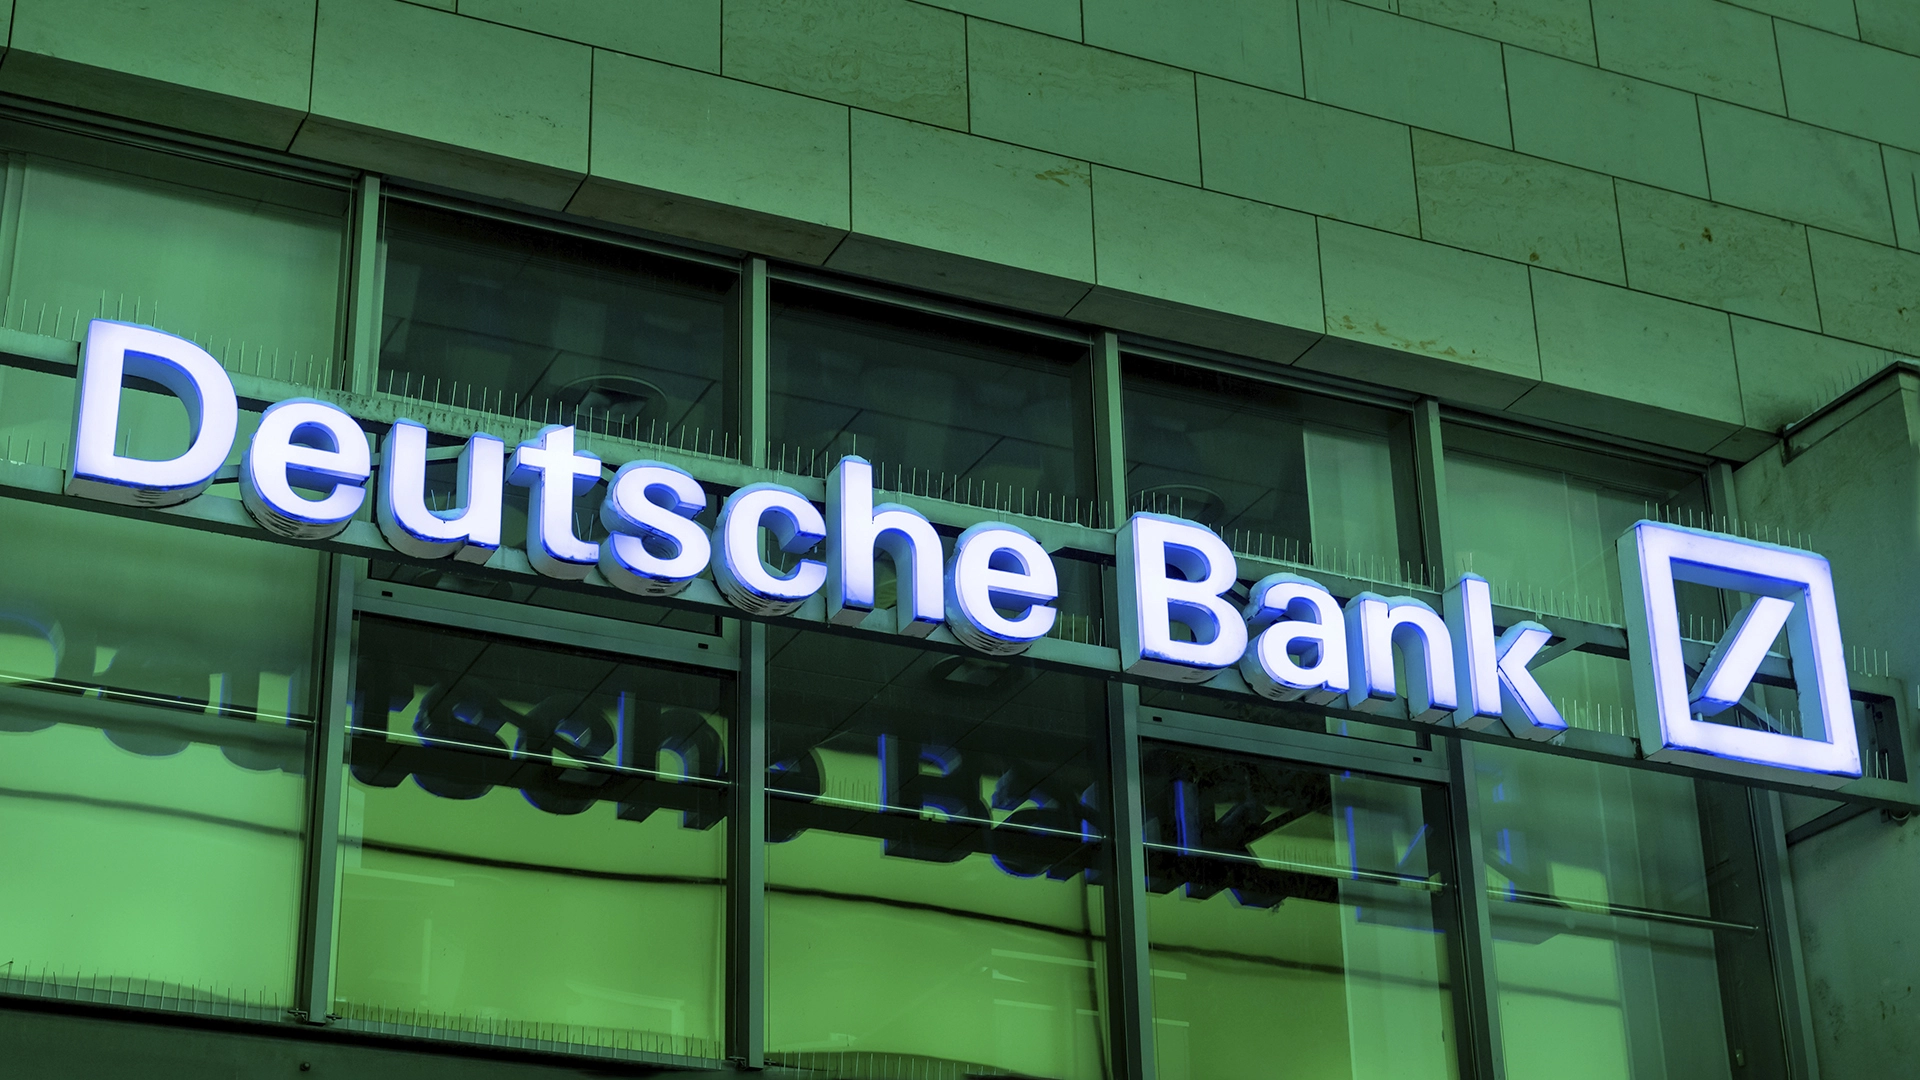 Deutsche Bank&#8209;Aktie: Fängt die richtige Rallye jetzt erst an? (Foto: 1take1shot - stock.adobe.com)